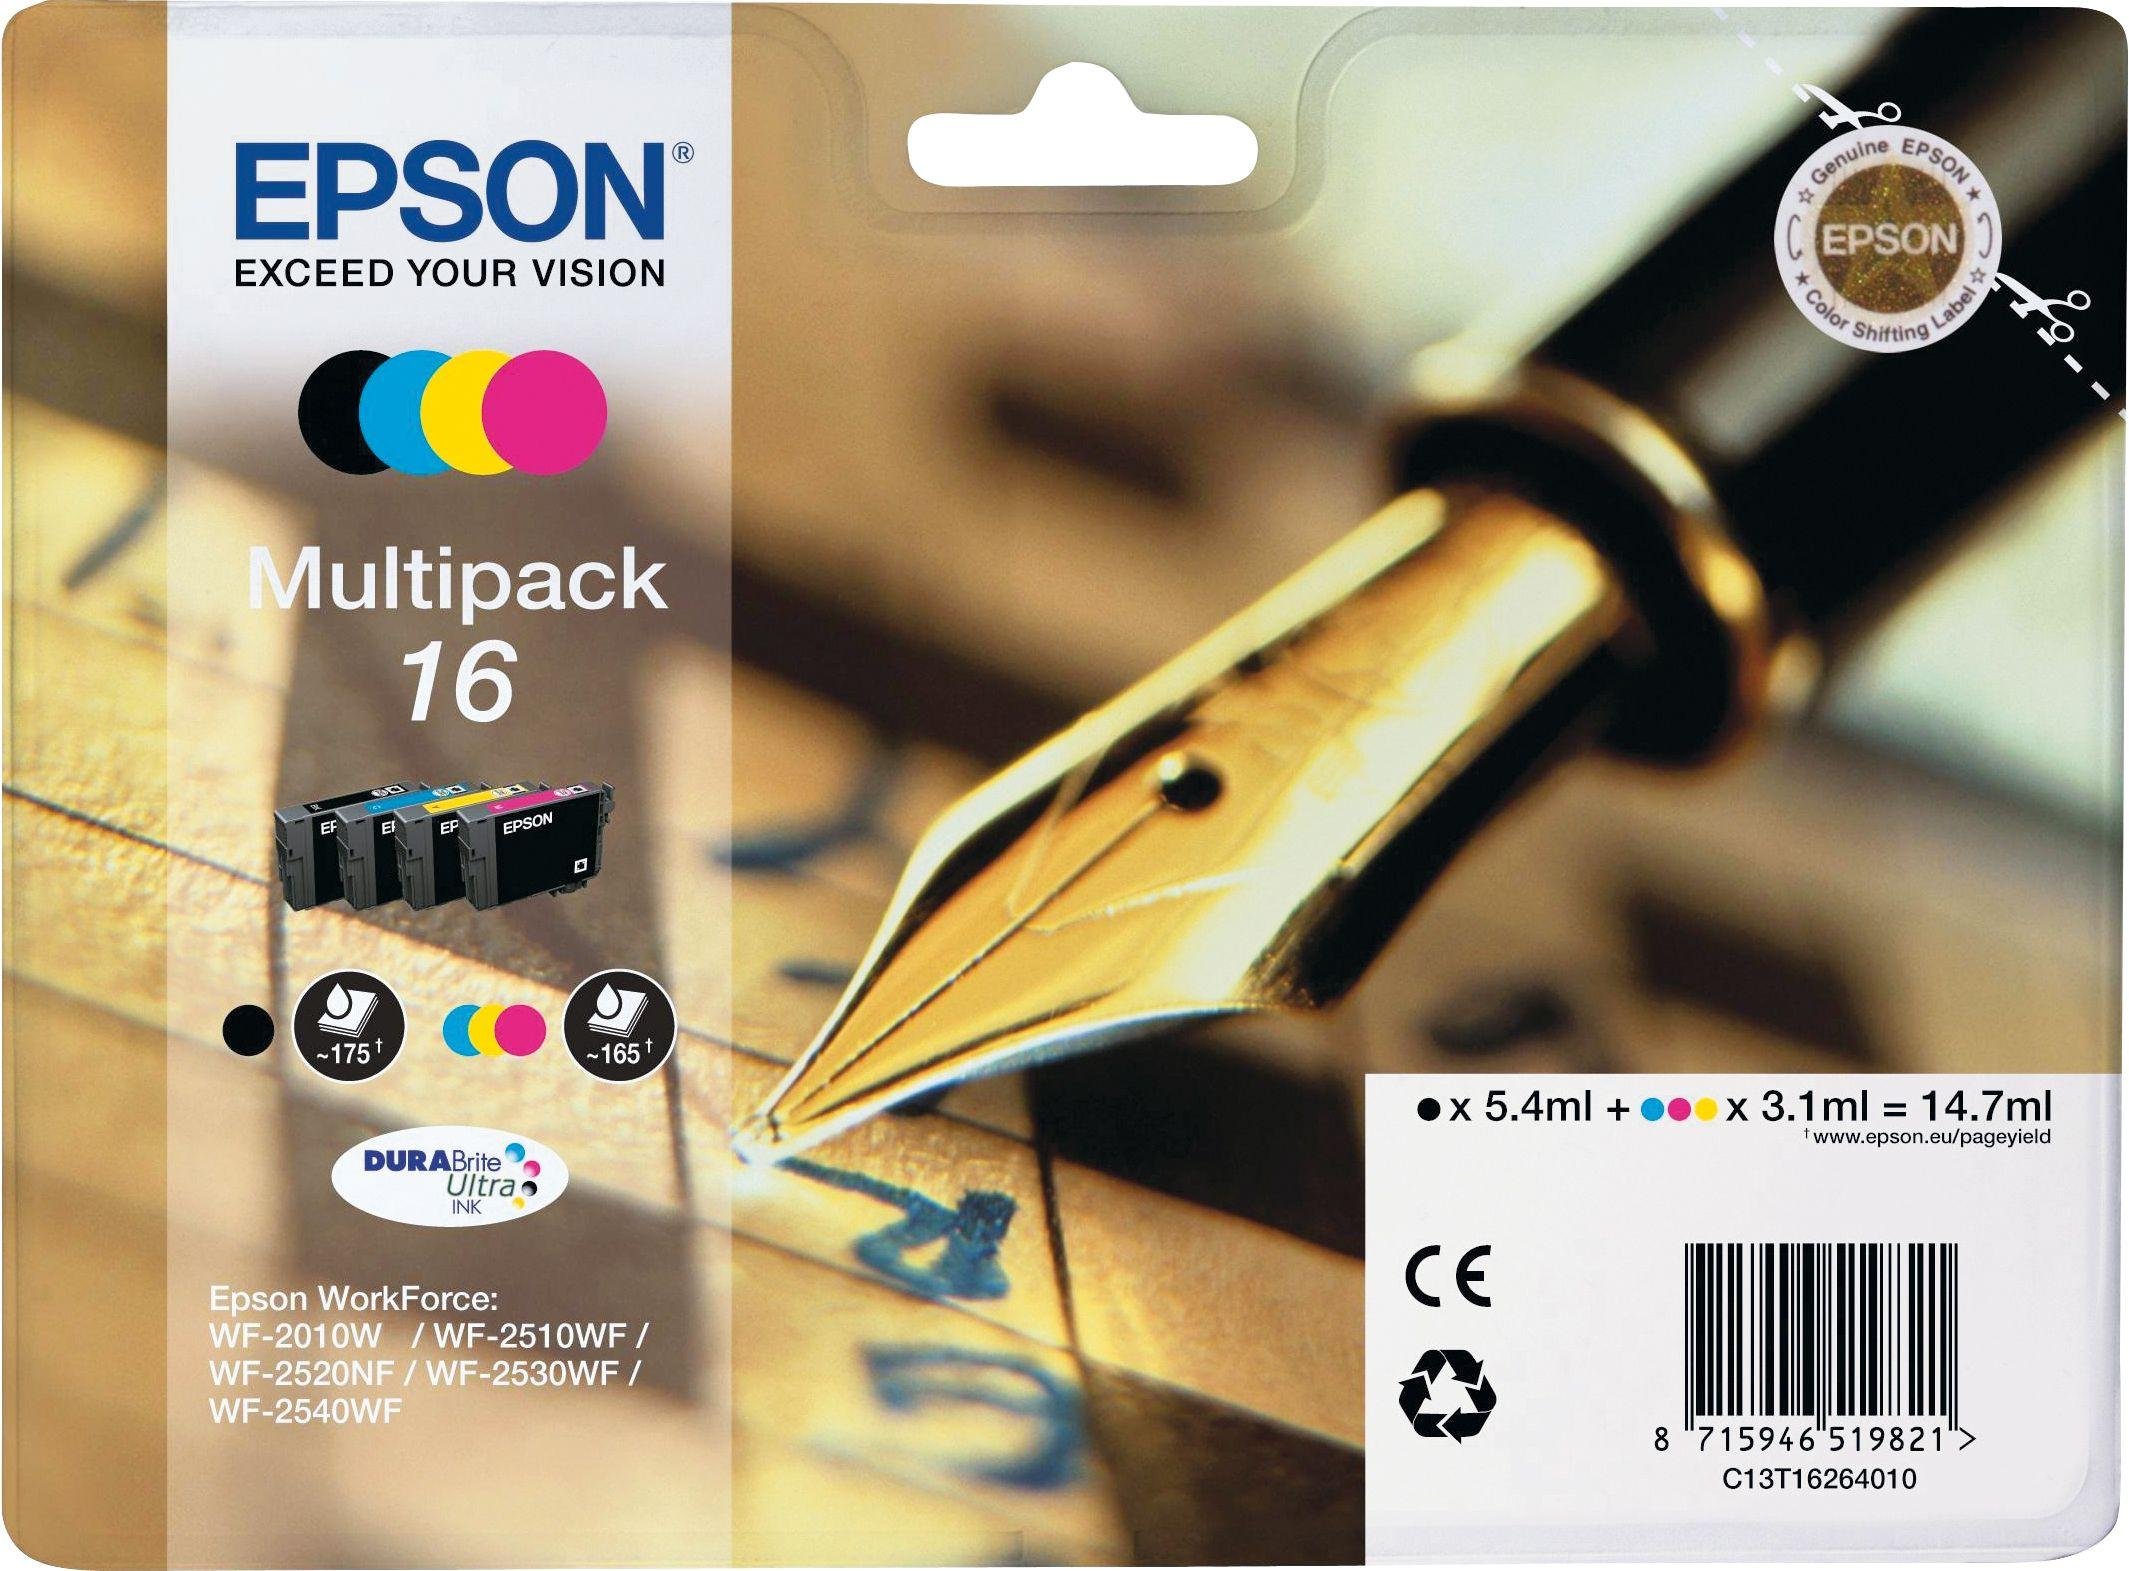 Epson 16 Pen Ink Cartridges Review